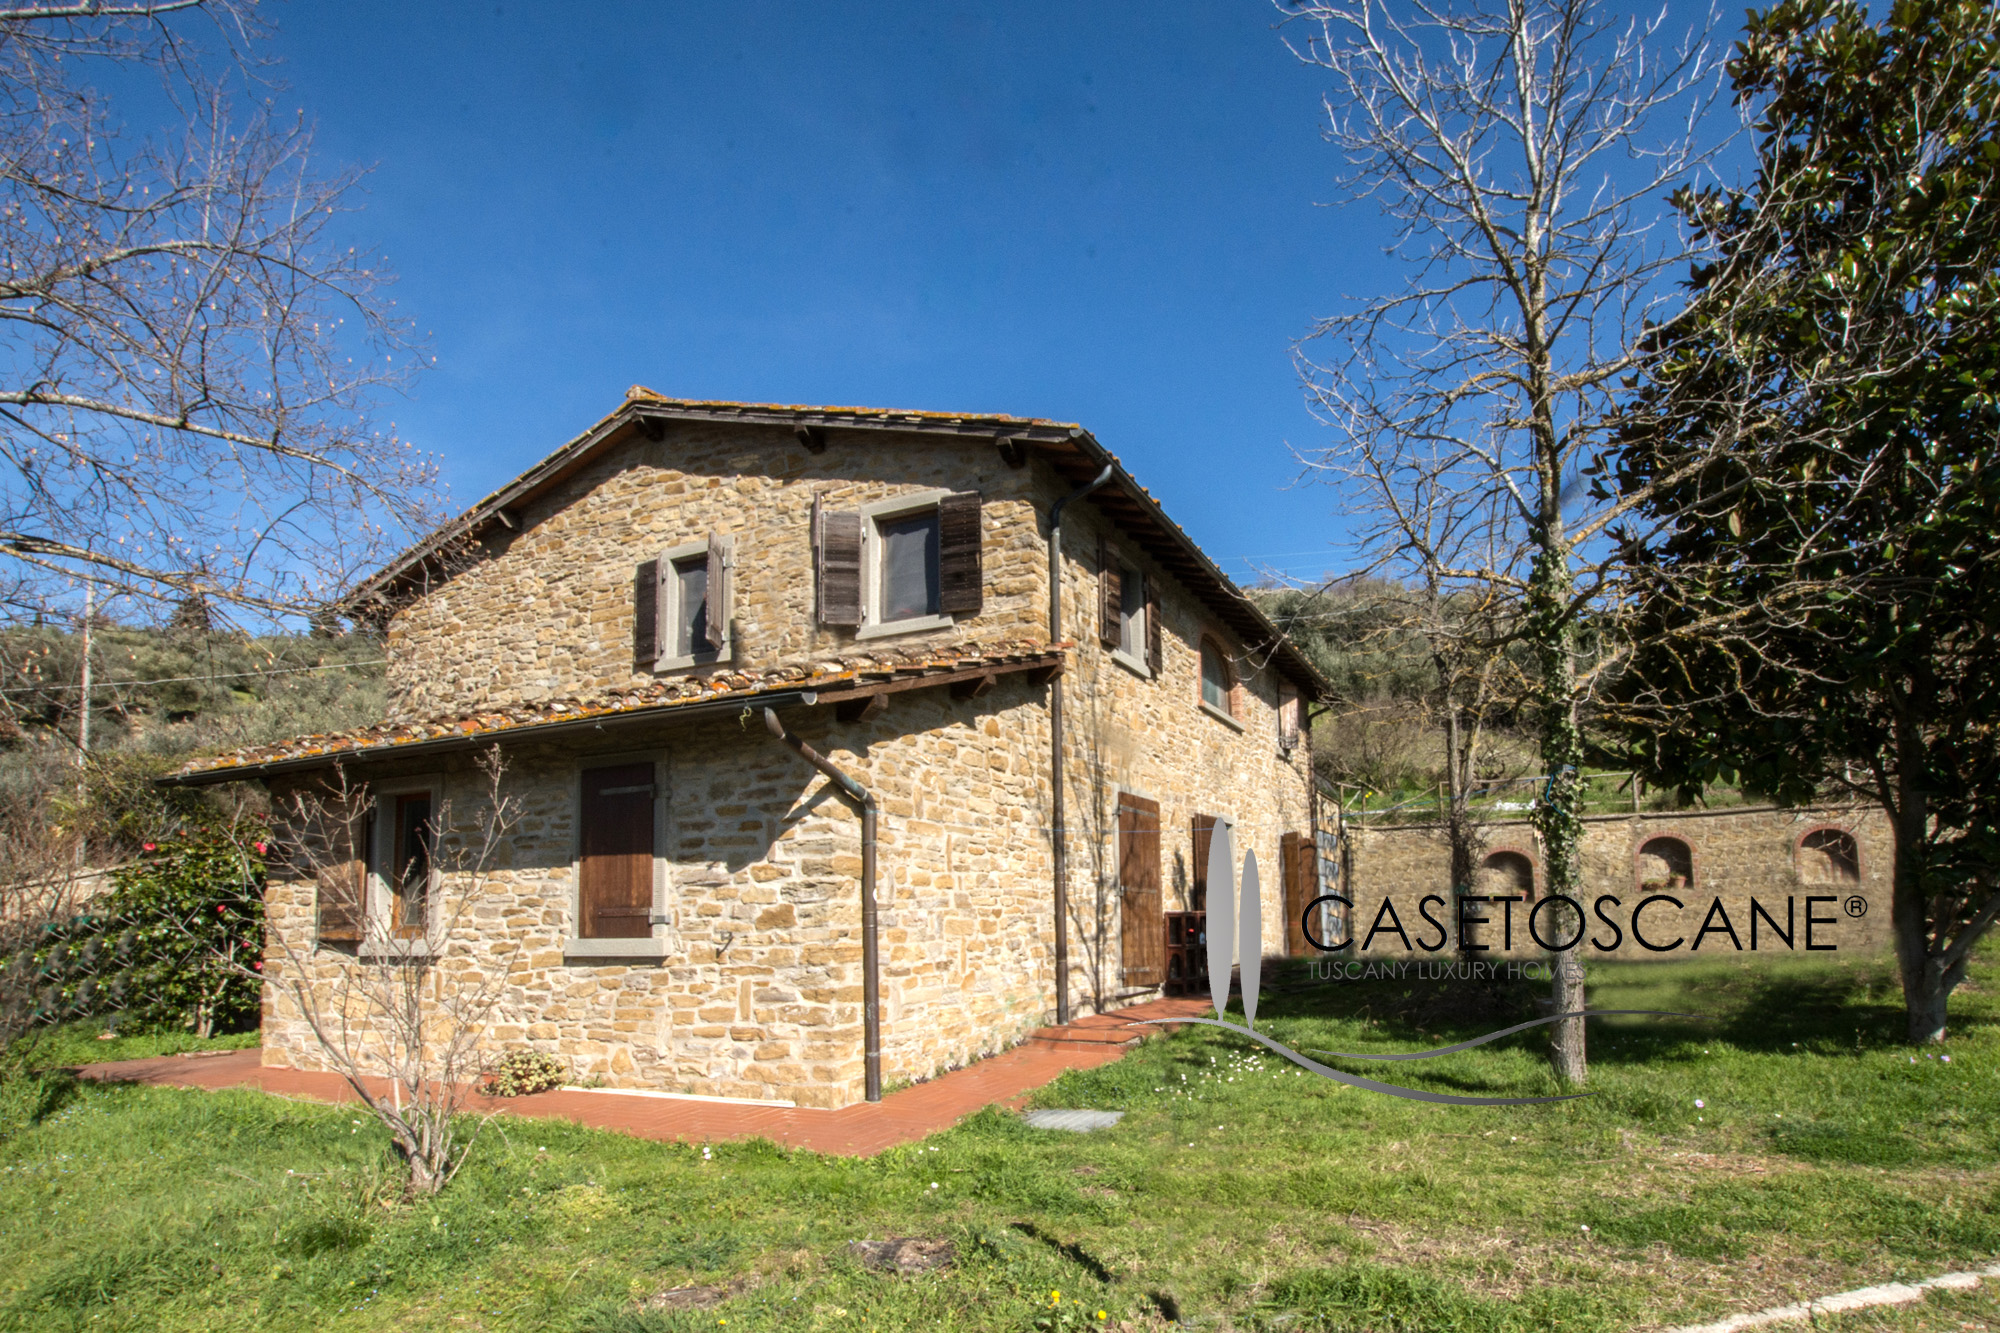 S256 - Casale in pietra di circa mq.300 in condizioni già abitabili, con terreno di mq.5.500. Panoramico nelle colline a 5' da Arezzo.